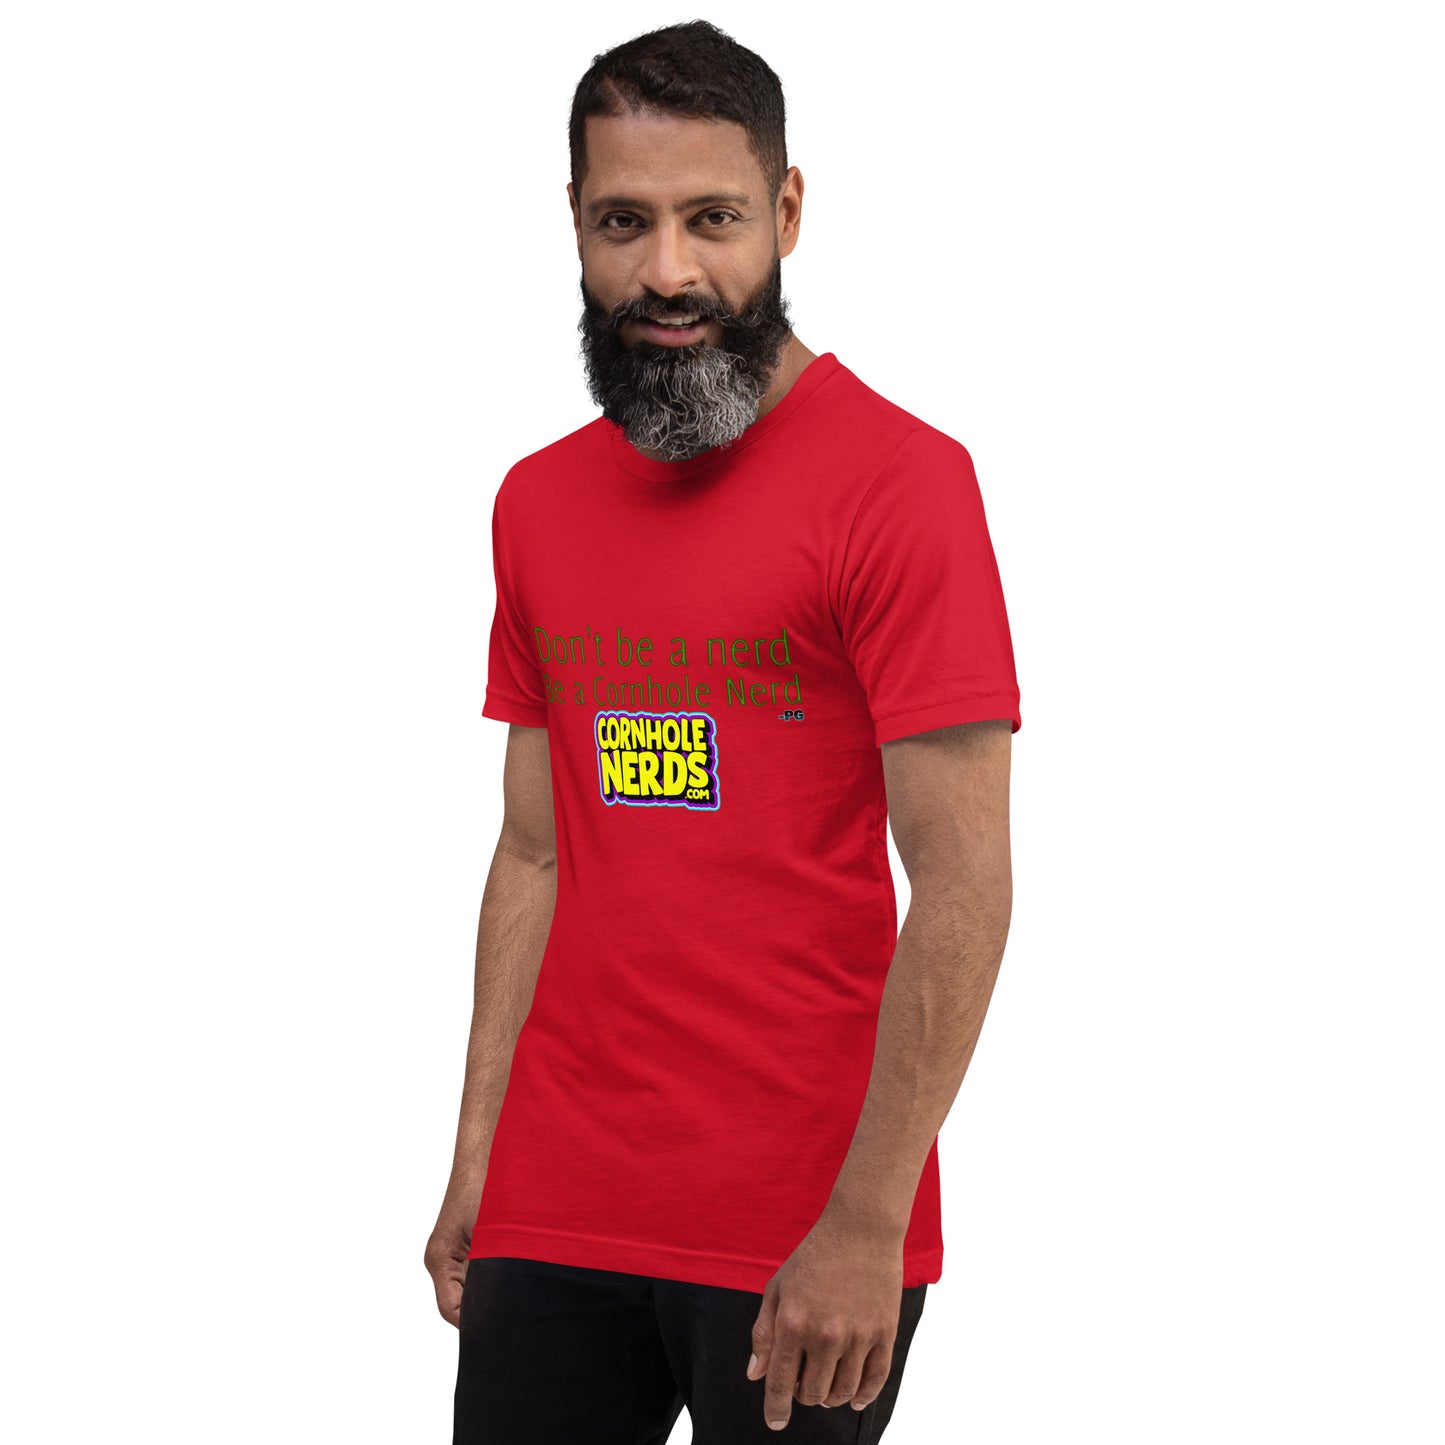 Dont be a Nerd be a Cornhole Nerd Pat Groff inspired Unisex t-shirt